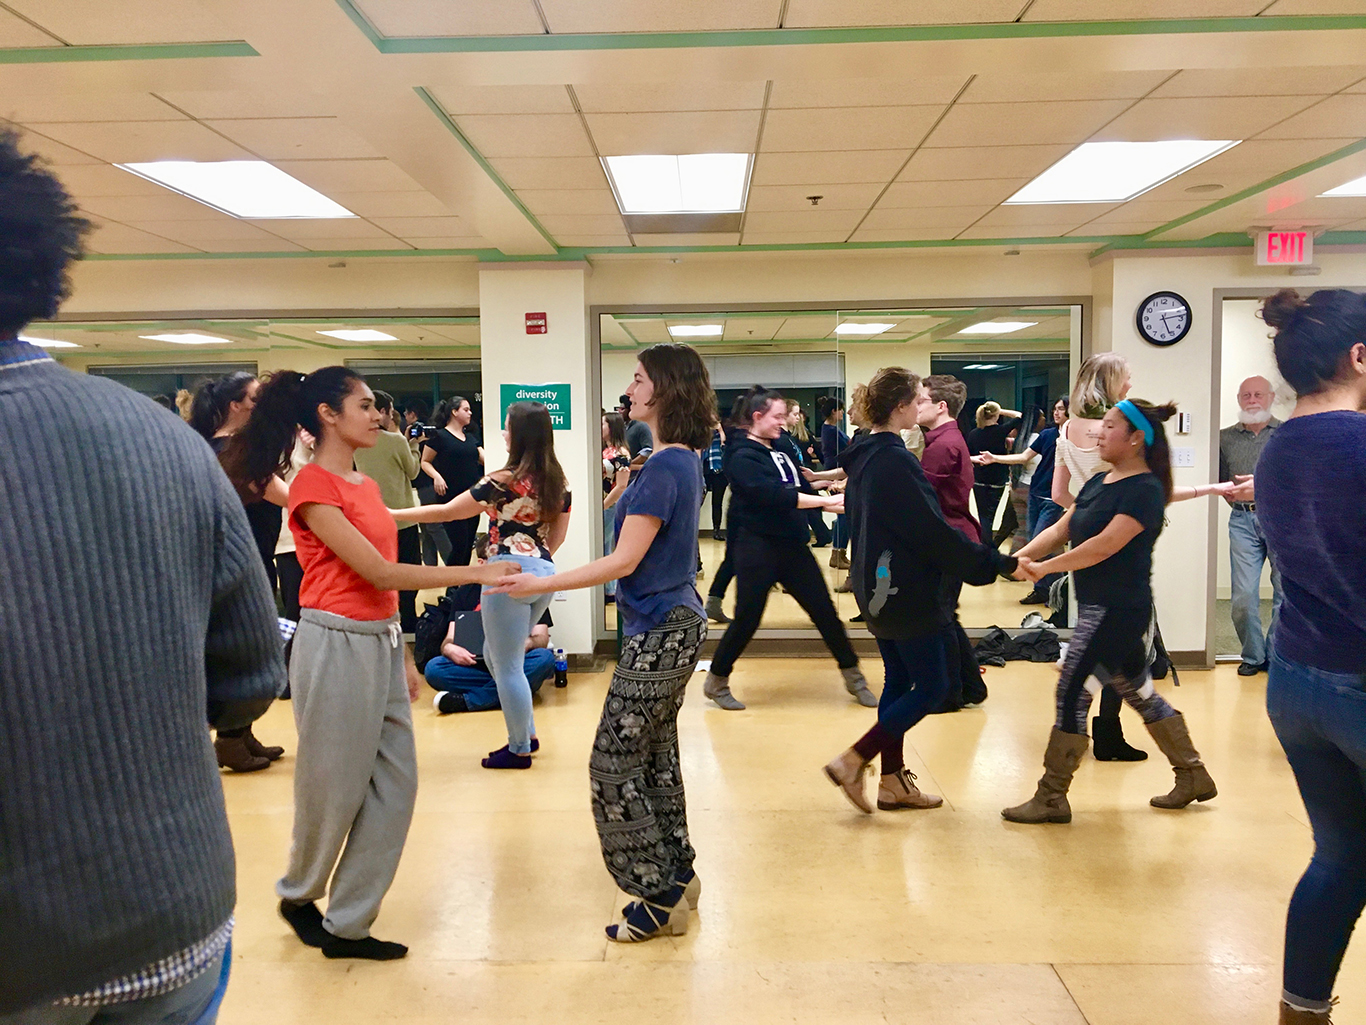 Students partner-dancing in swing dance class in dance studio.